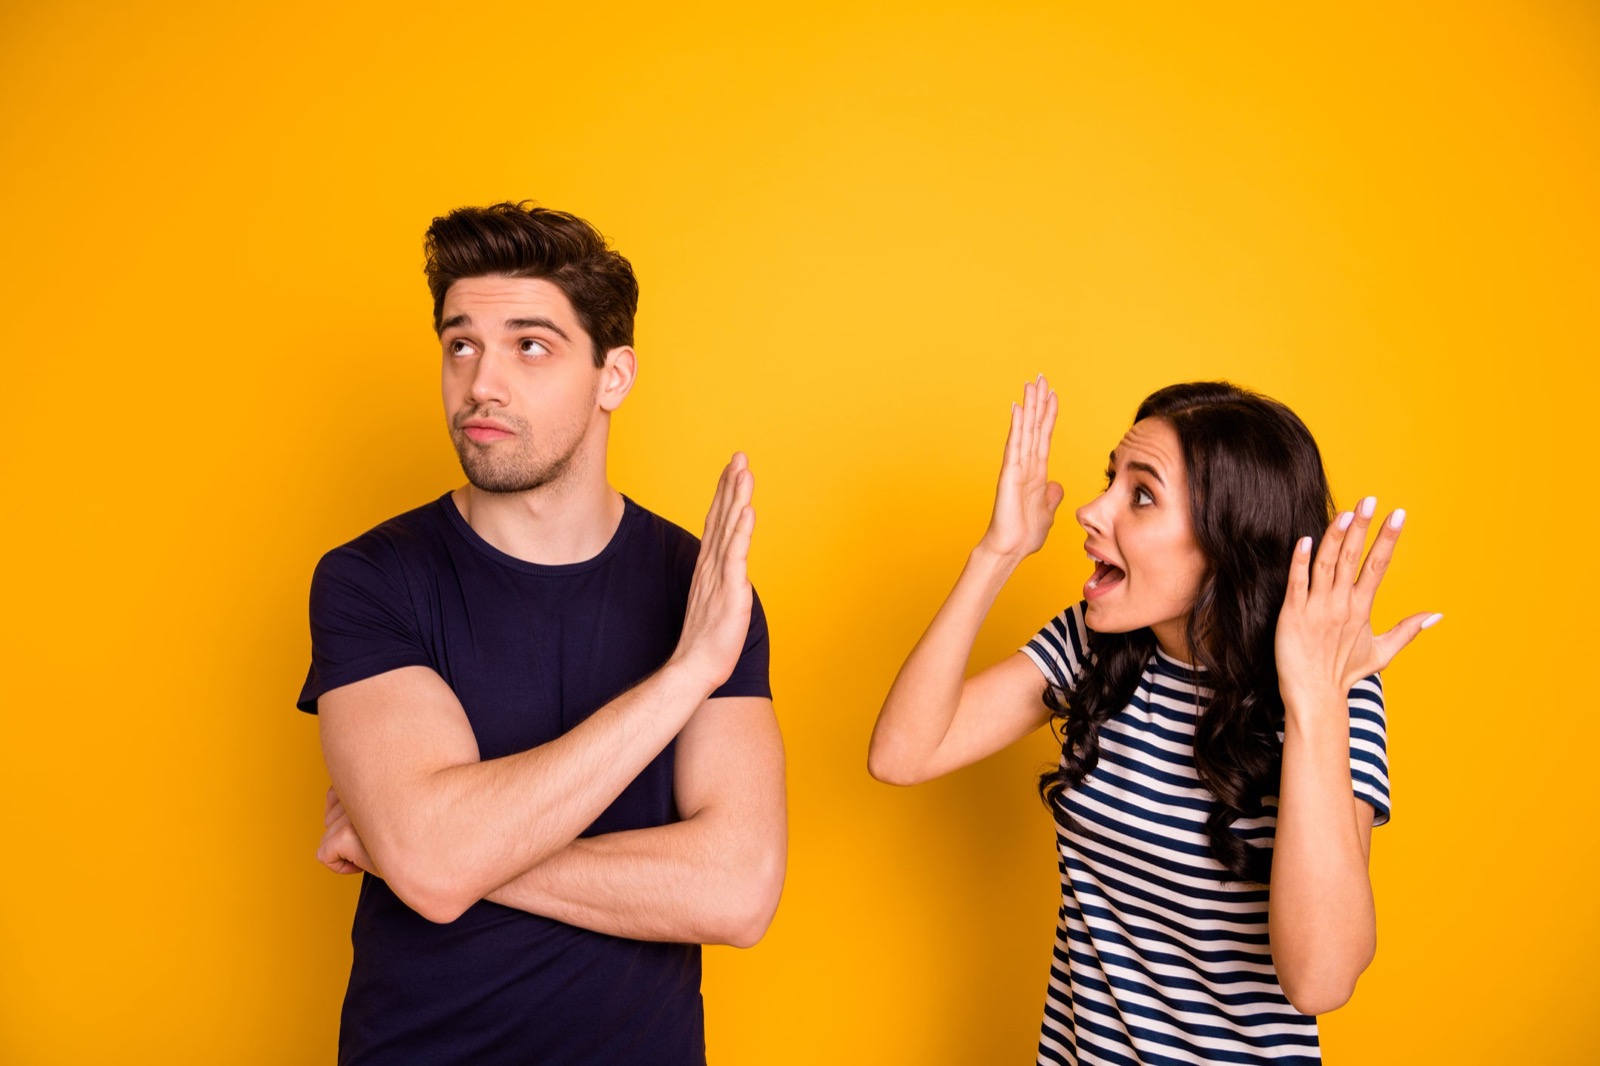 Love Language Test Couple Conflict Argument Quarrel